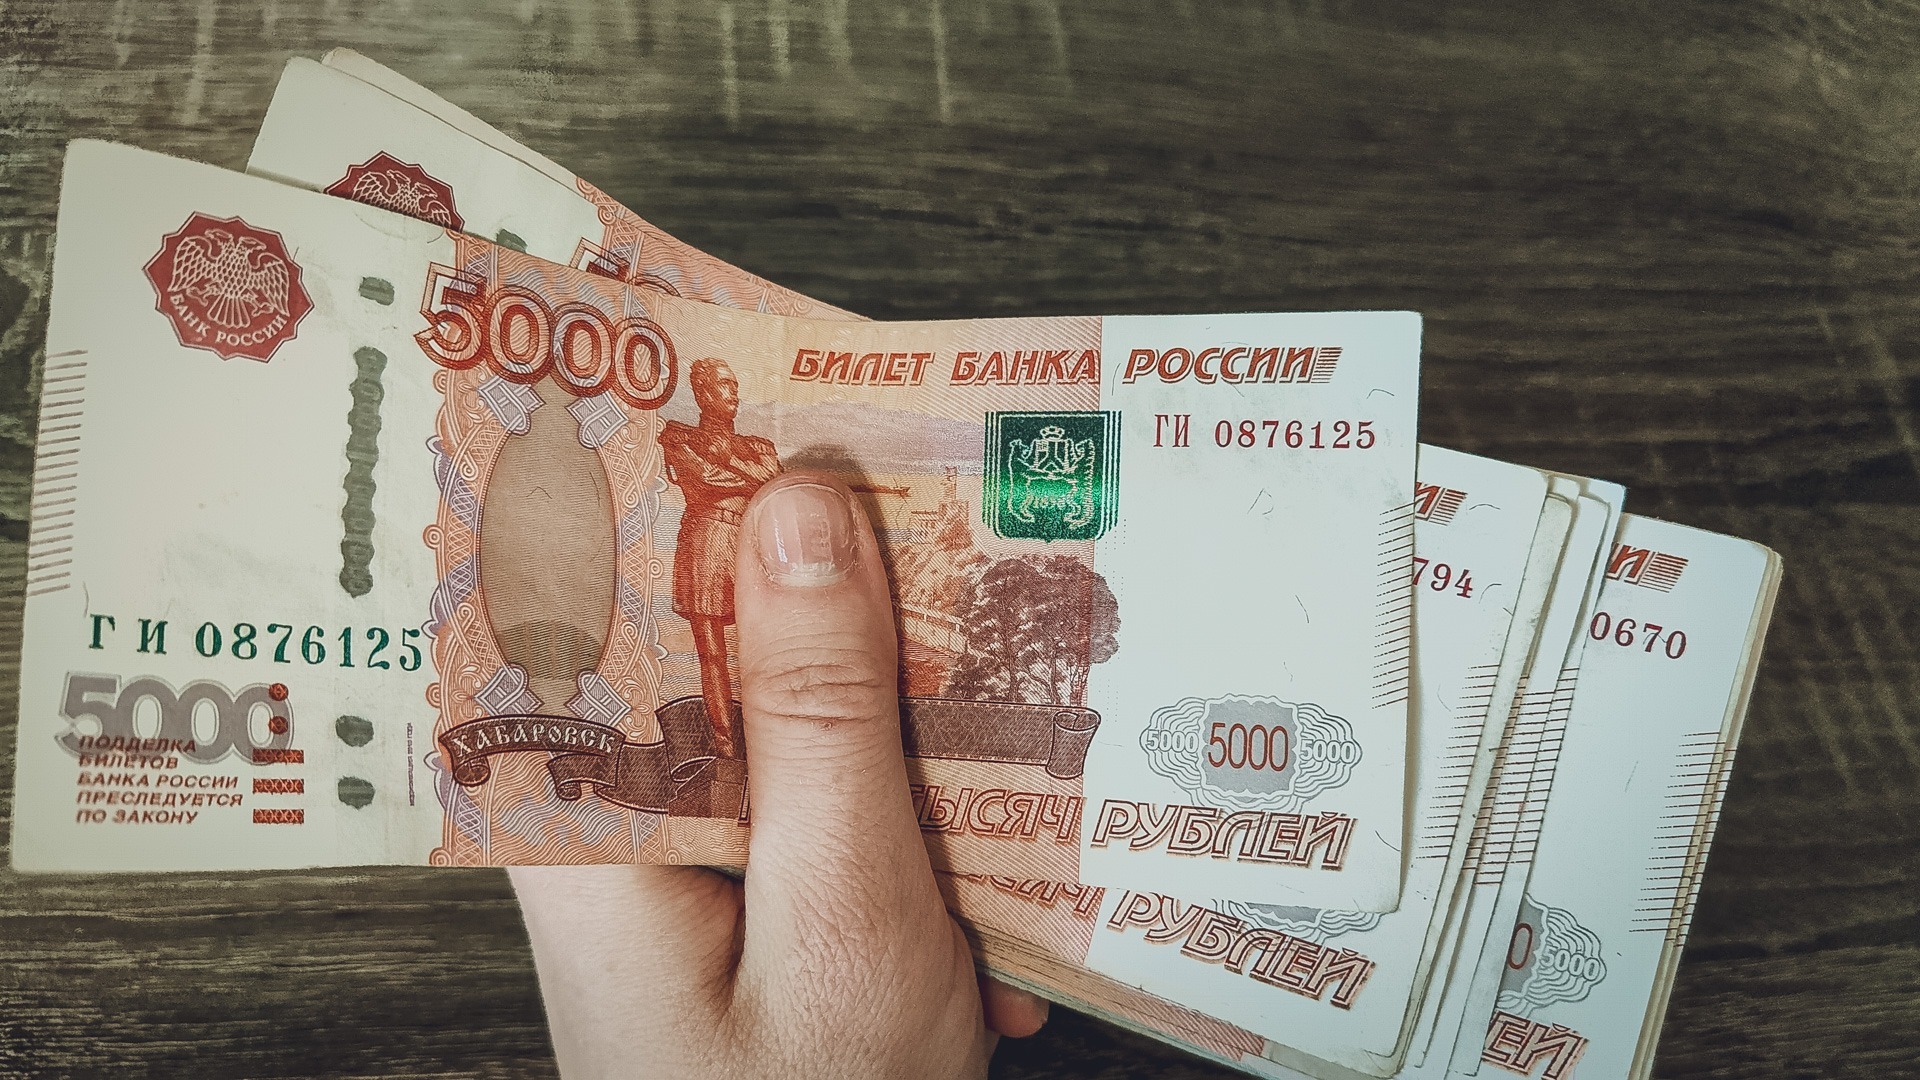 Украинец за вознаграждение в 96 тыс. рублей хотел подорвать нефтебазу под Москвой